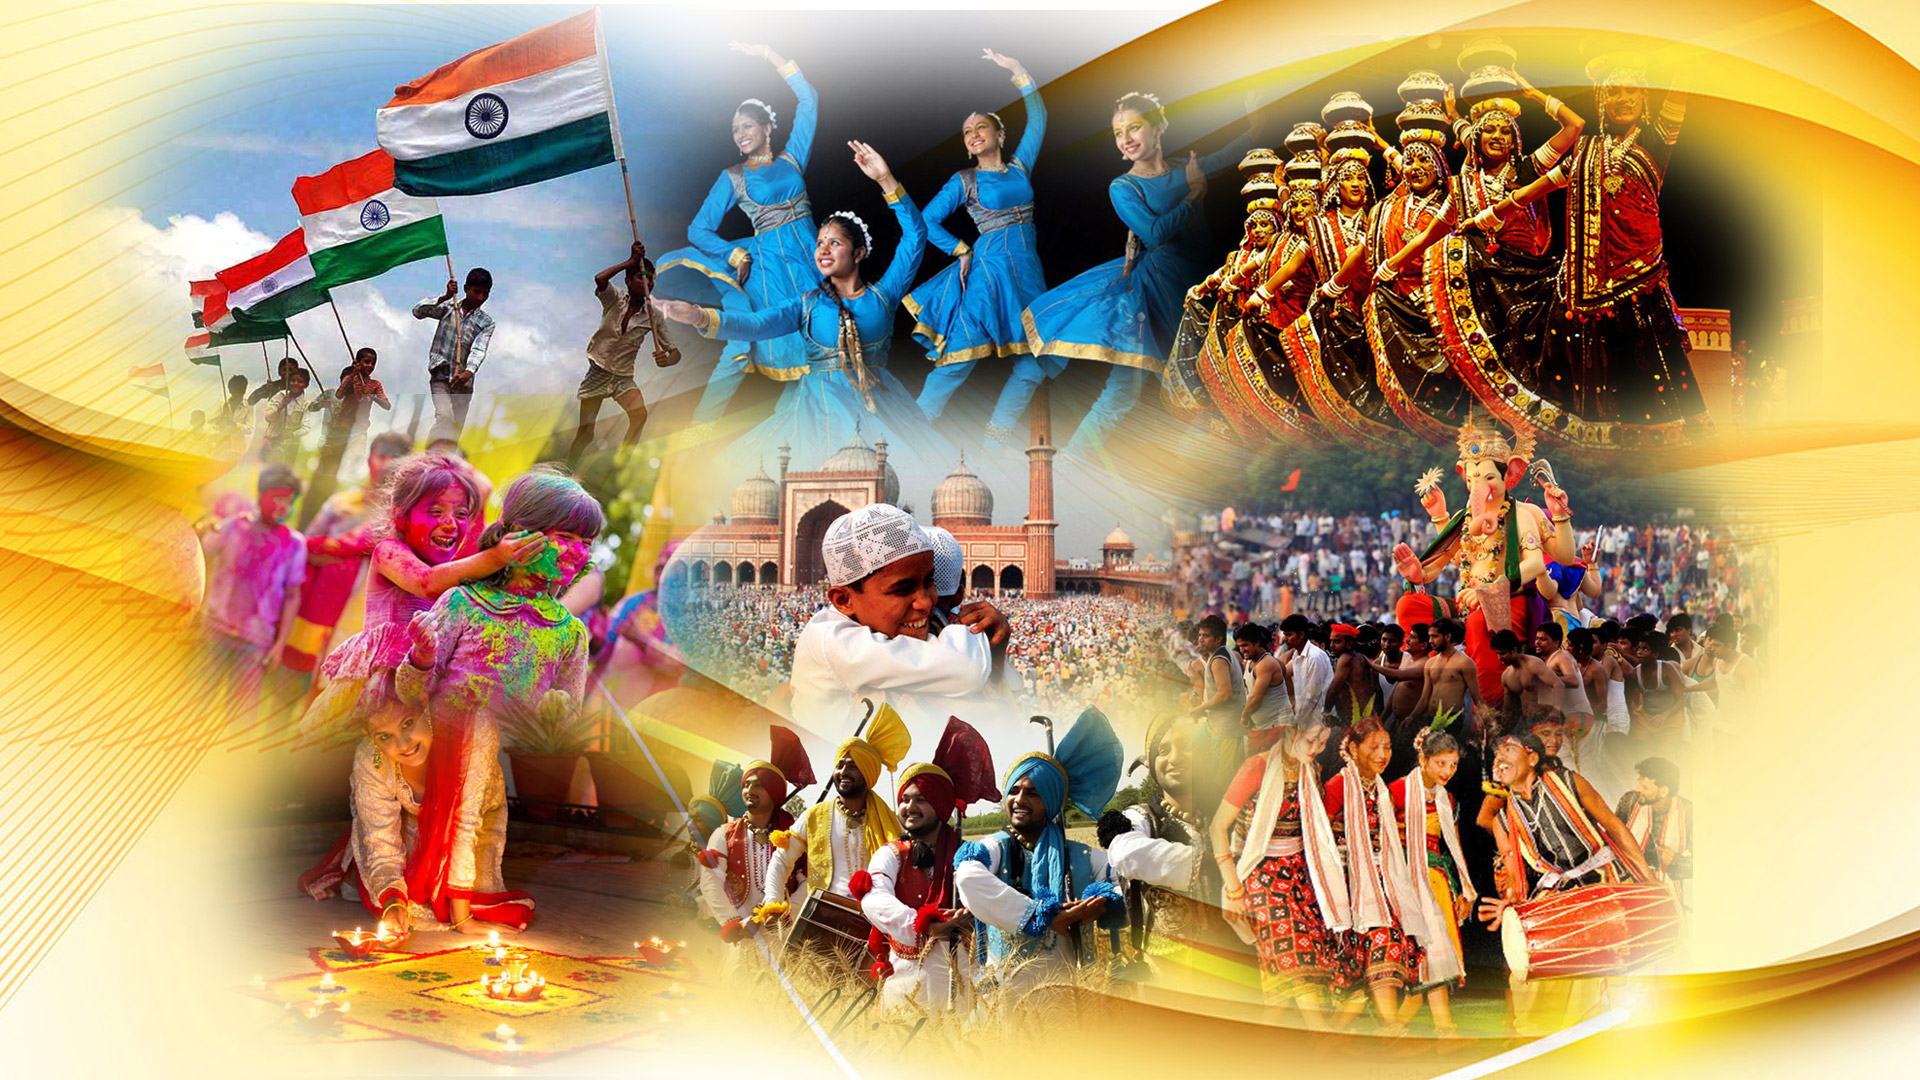 भारतीय संस्कृति और सभ्यता